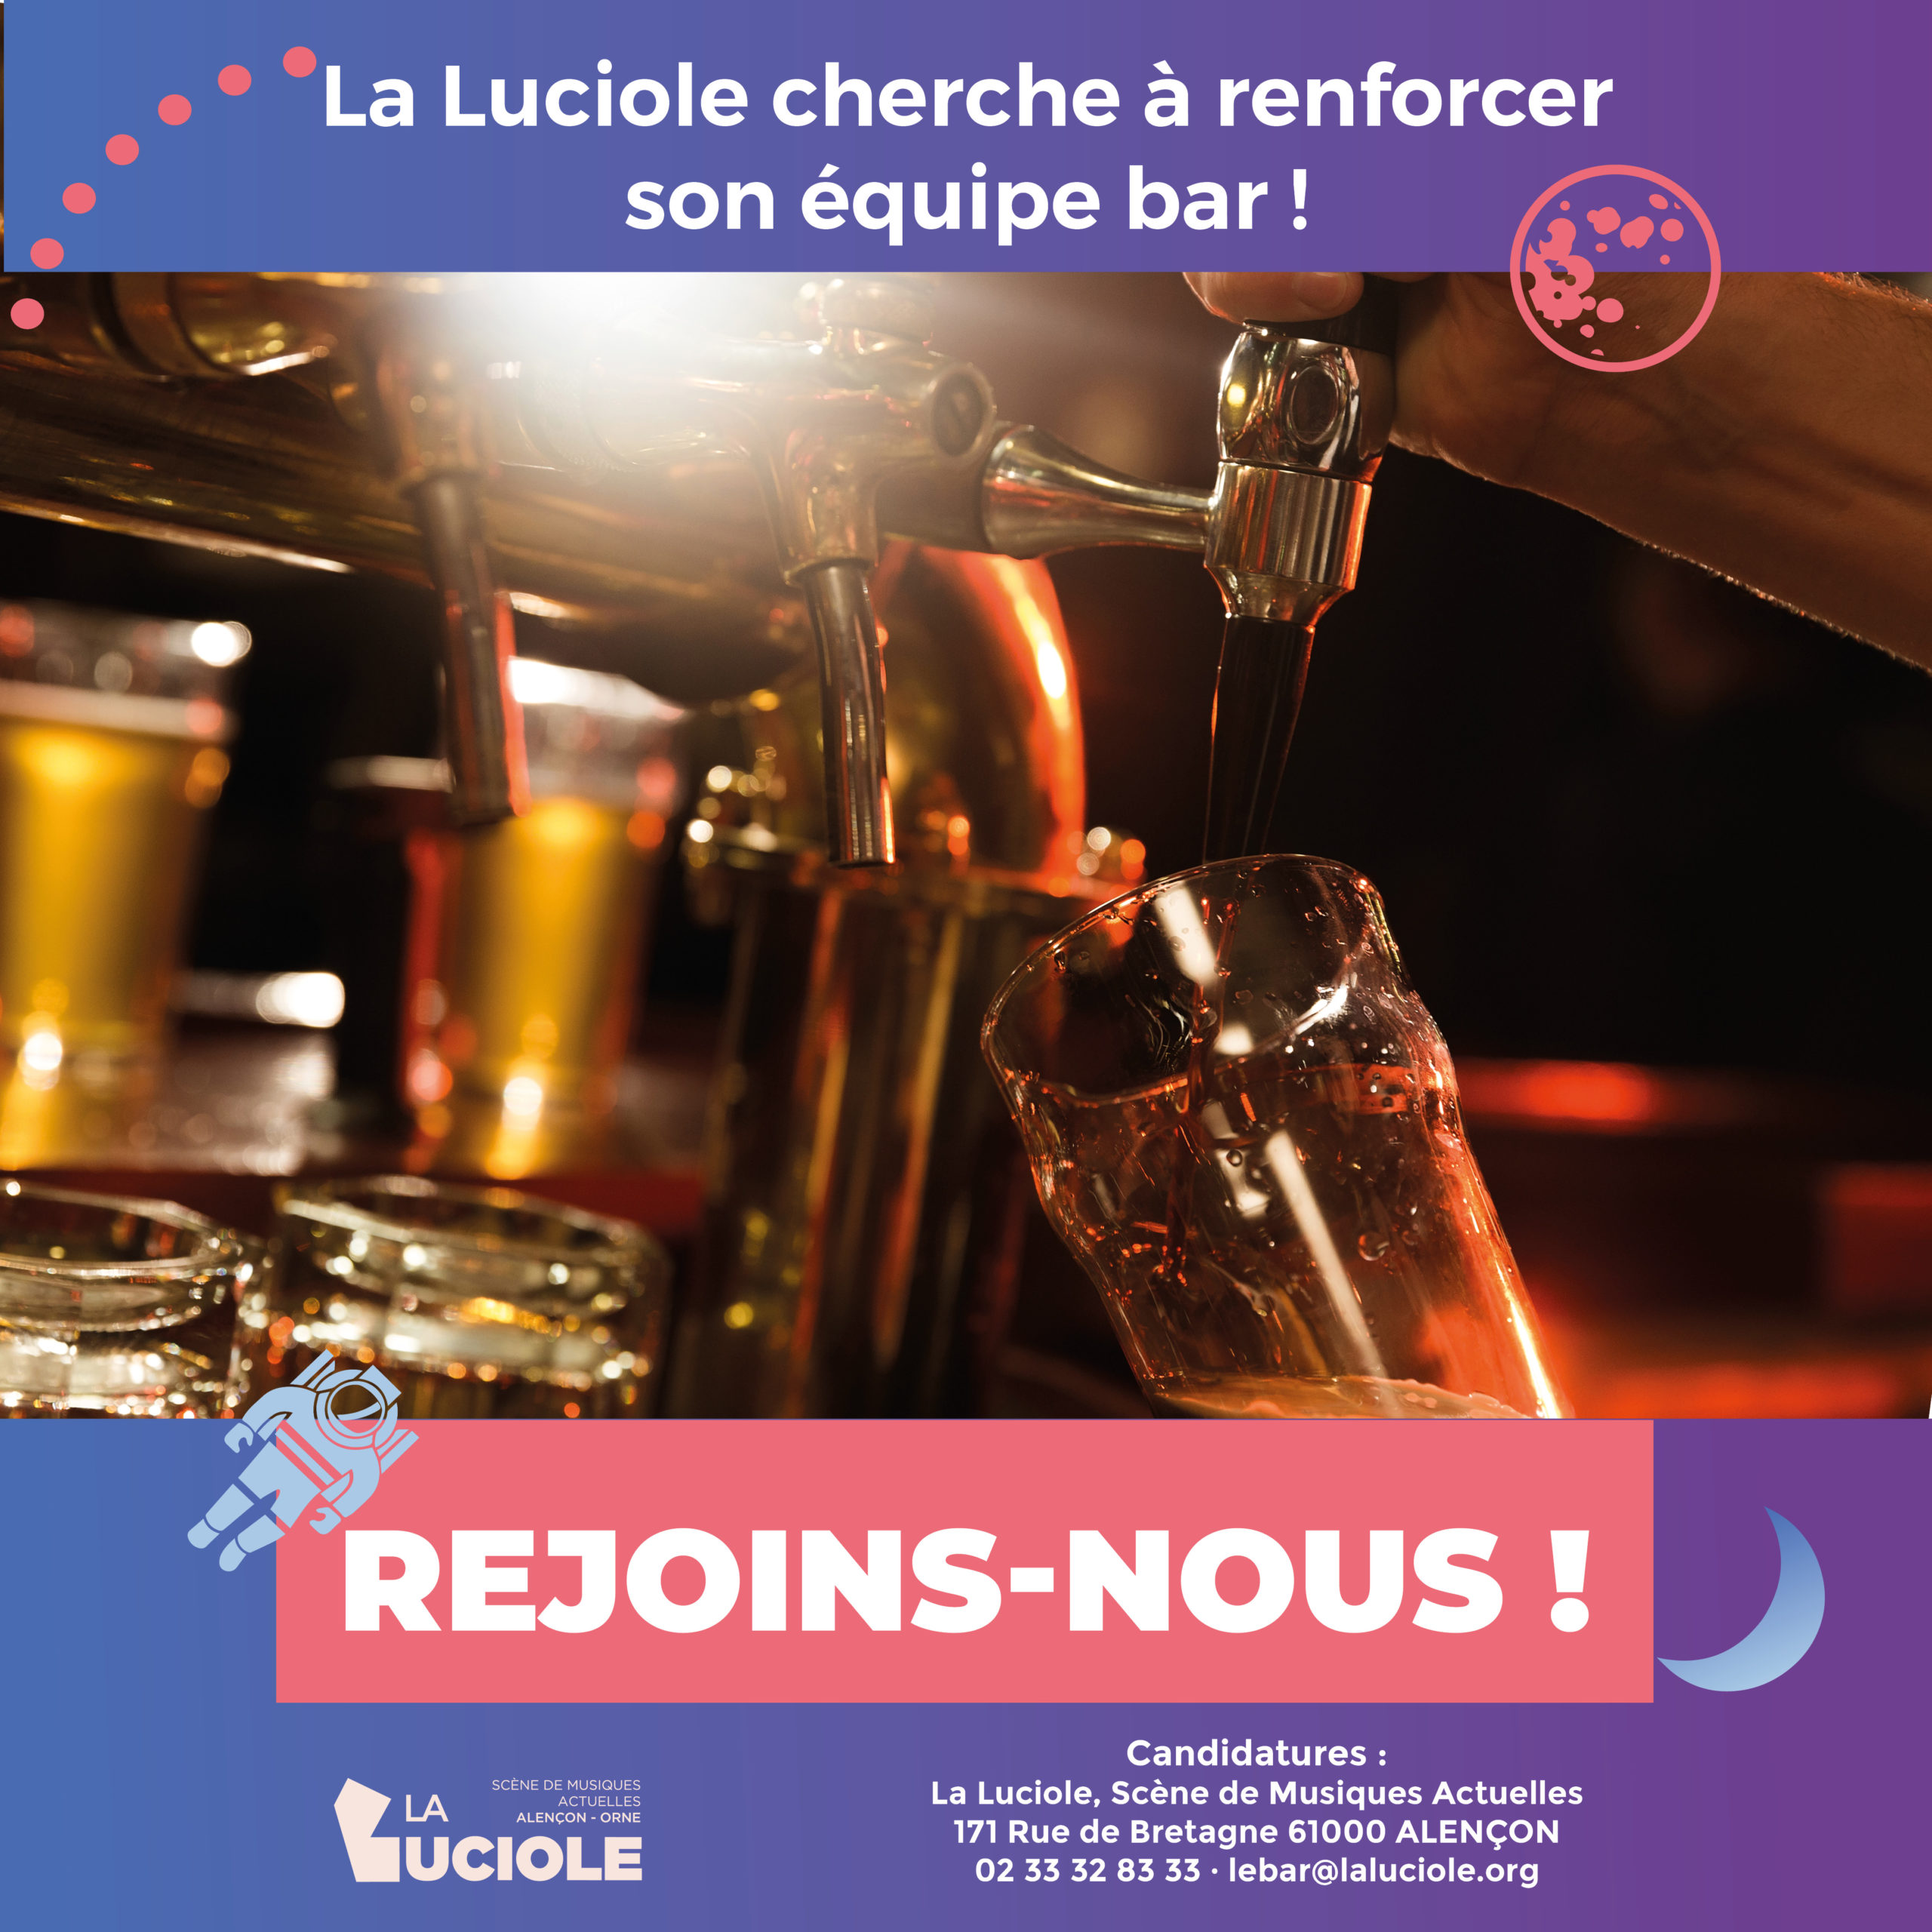 Affiche proposant une offre d'emploi pour le post de barman lors des soirées de concerts à La Luciole.